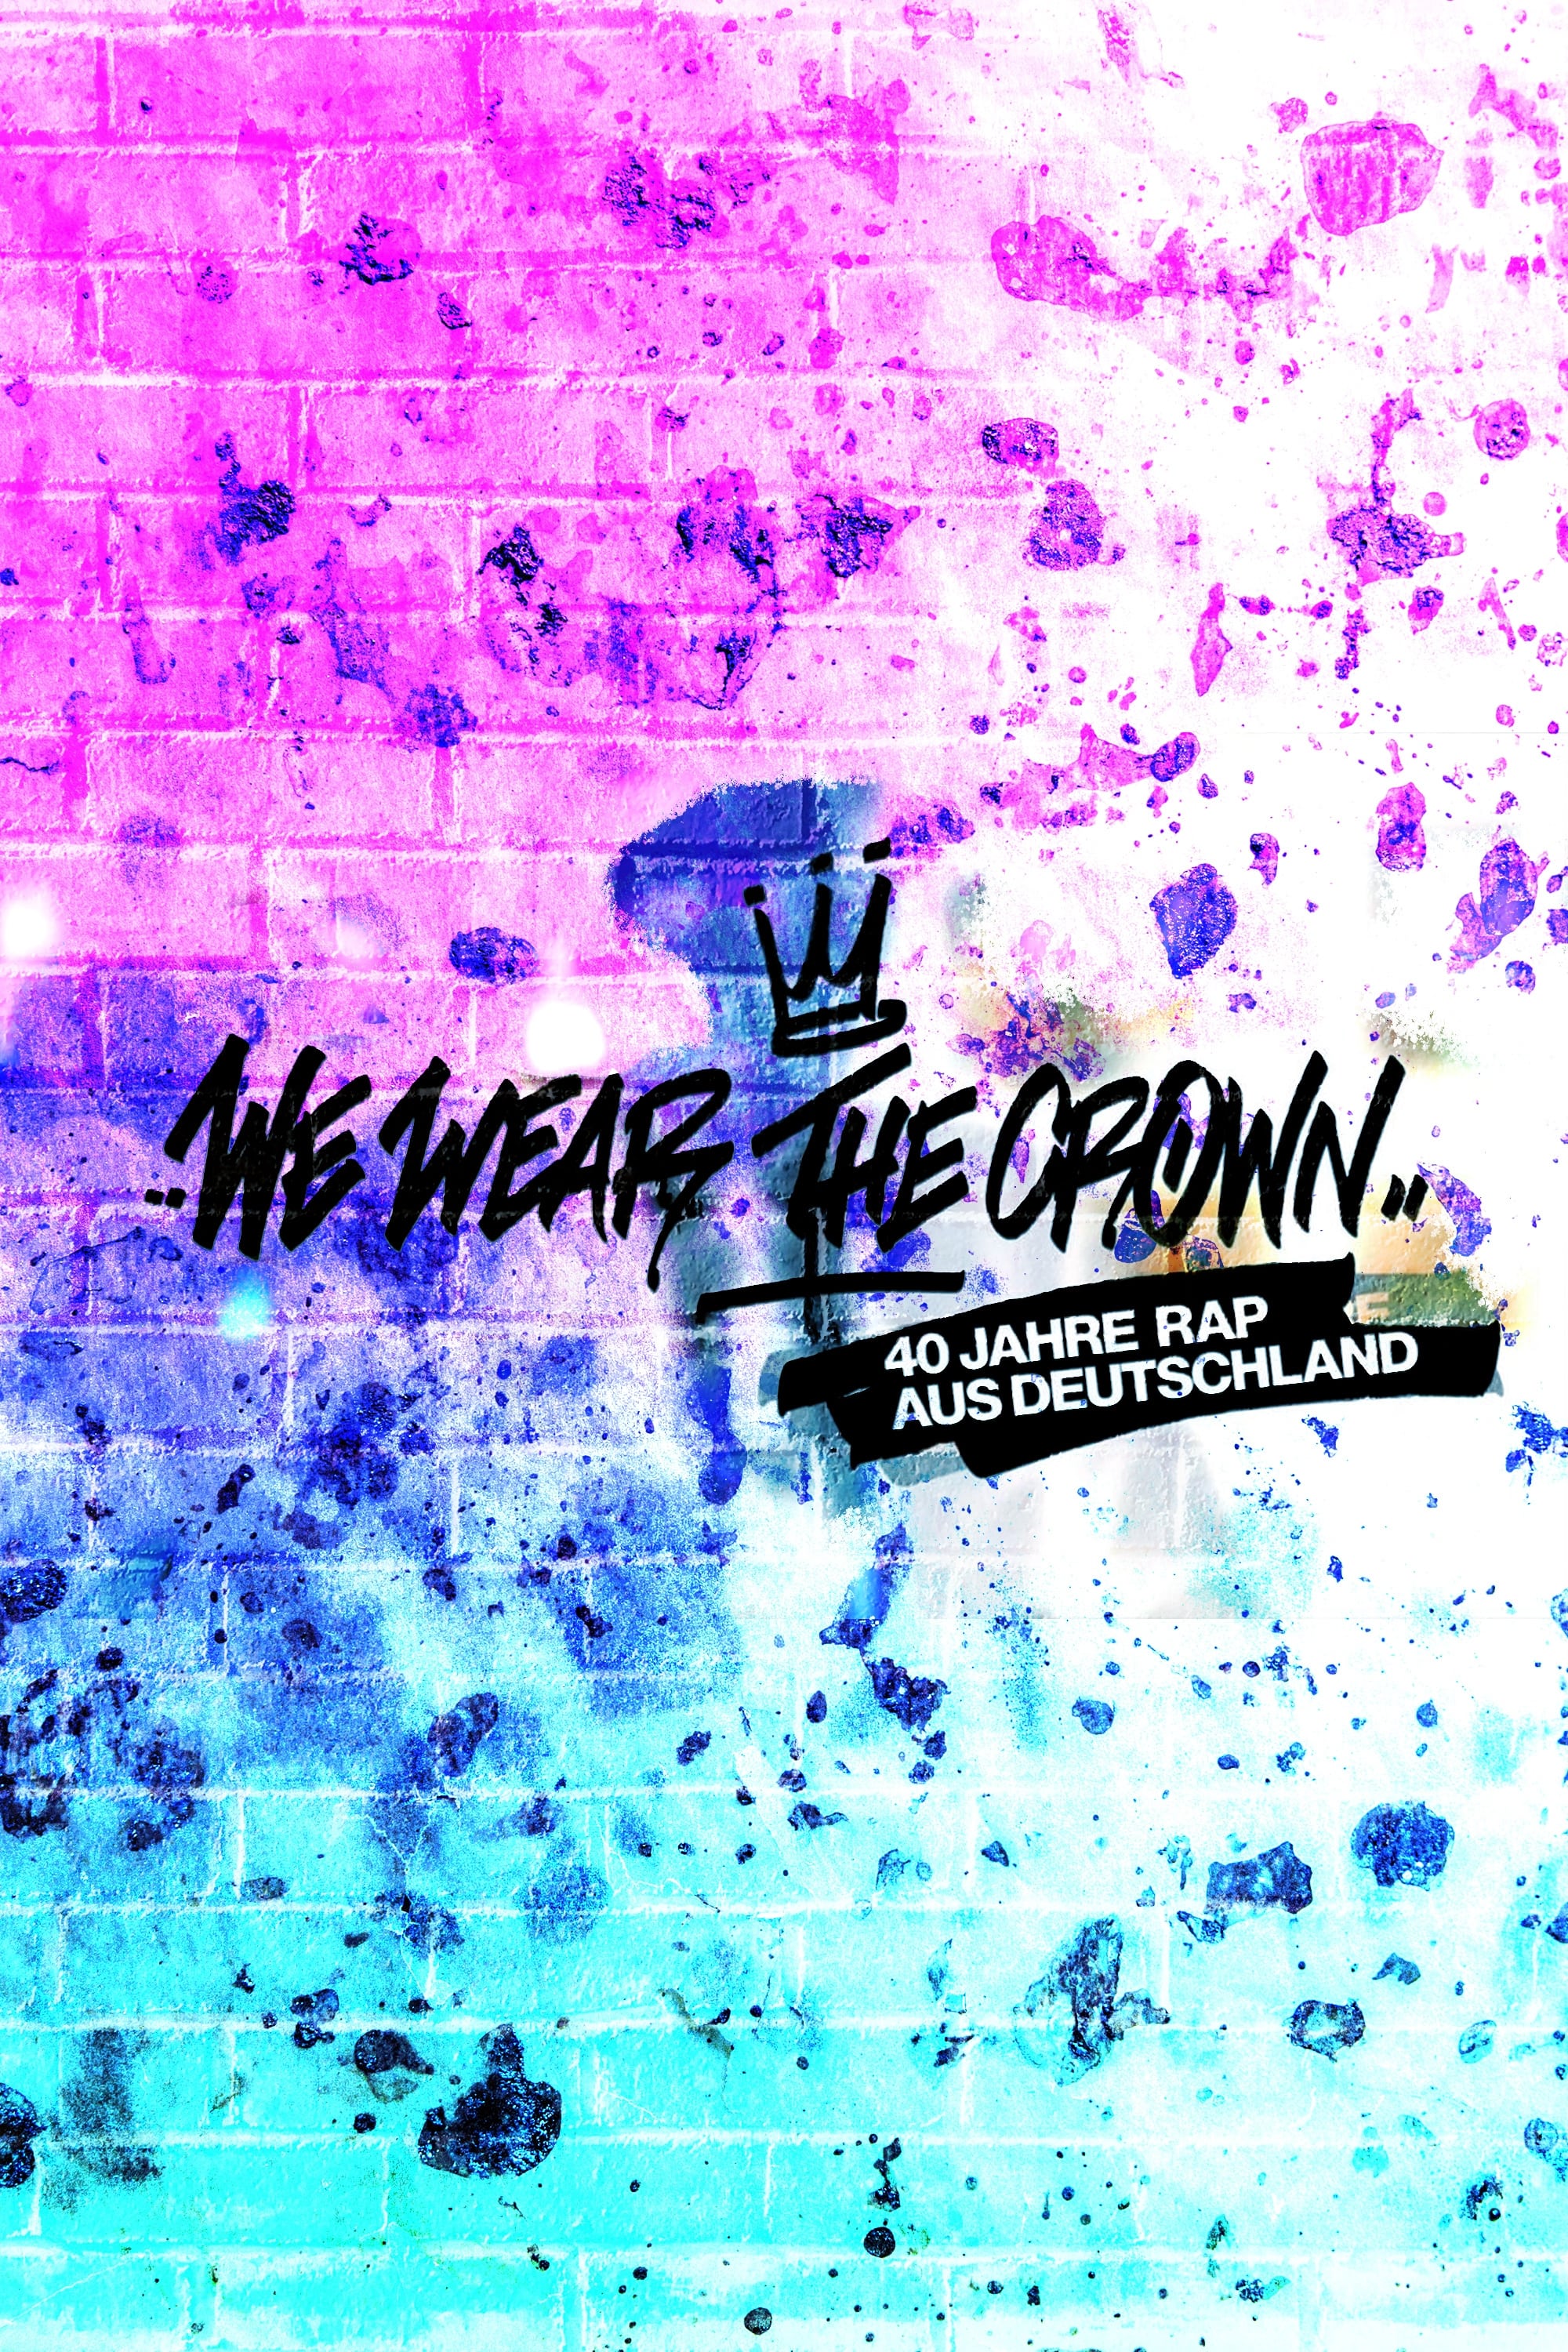 We Wear the Crown - 40 Jahre Rap aus Deutschland